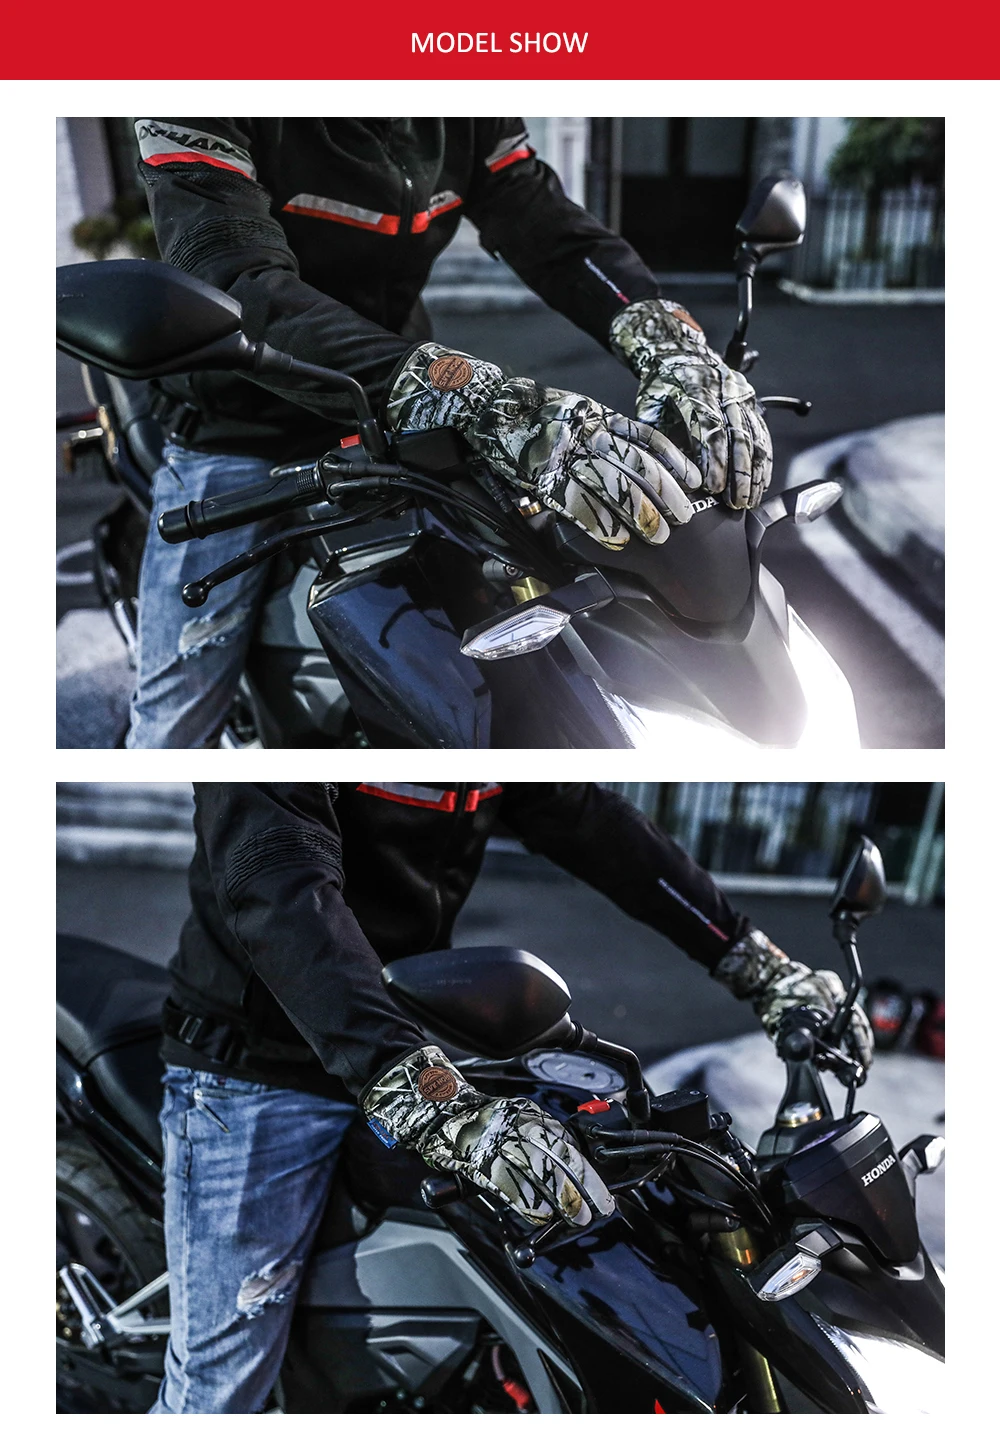 Мотоциклетные Перчатки с сенсорным экраном, Нескользящие зимние теплые защитные перчатки, водонепроницаемые ветрозащитные мотоциклетные гоночные черные перчатки